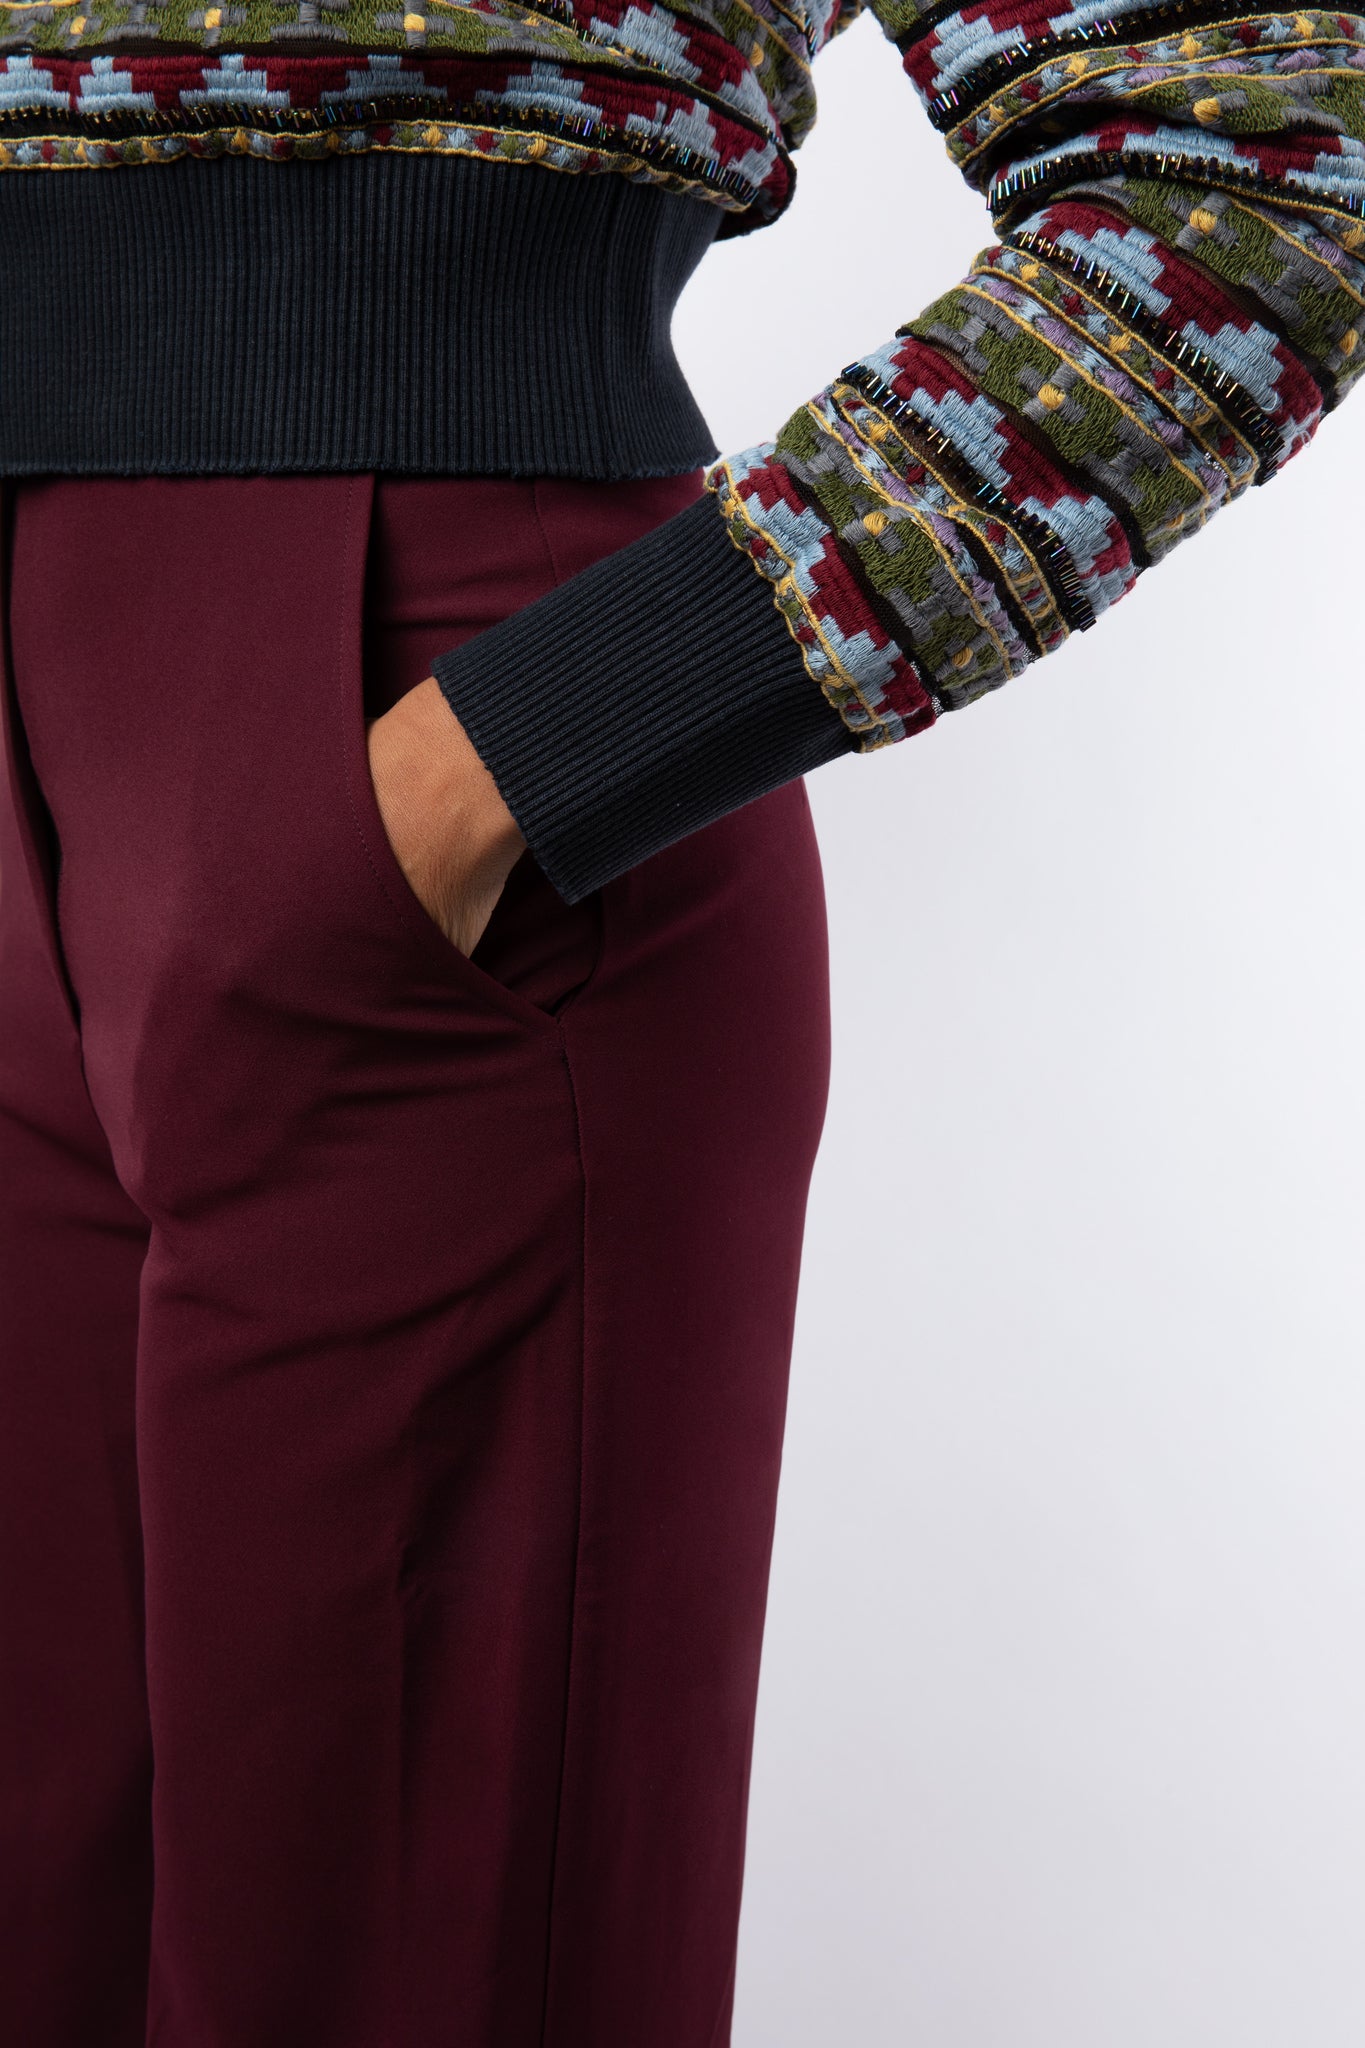 Close up of embellished jumper details and maroon trouser pocket